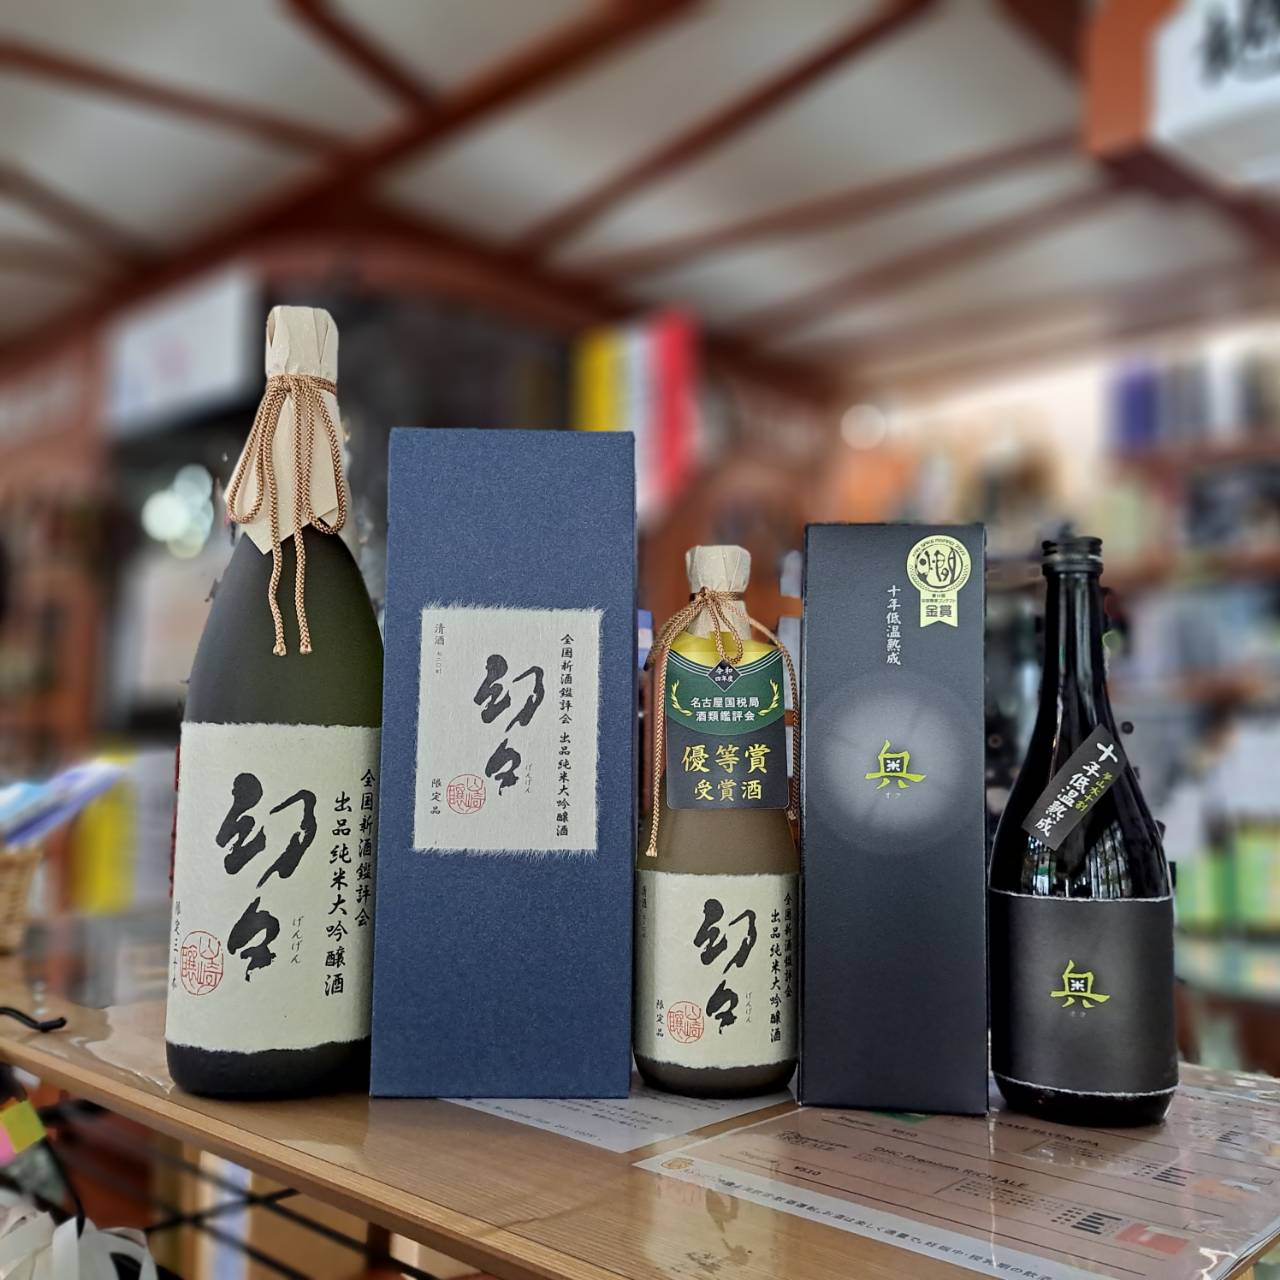 『愛知県の山﨑さんから、鑑評会出品酒と長期熟成秘蔵酒が入荷しました』